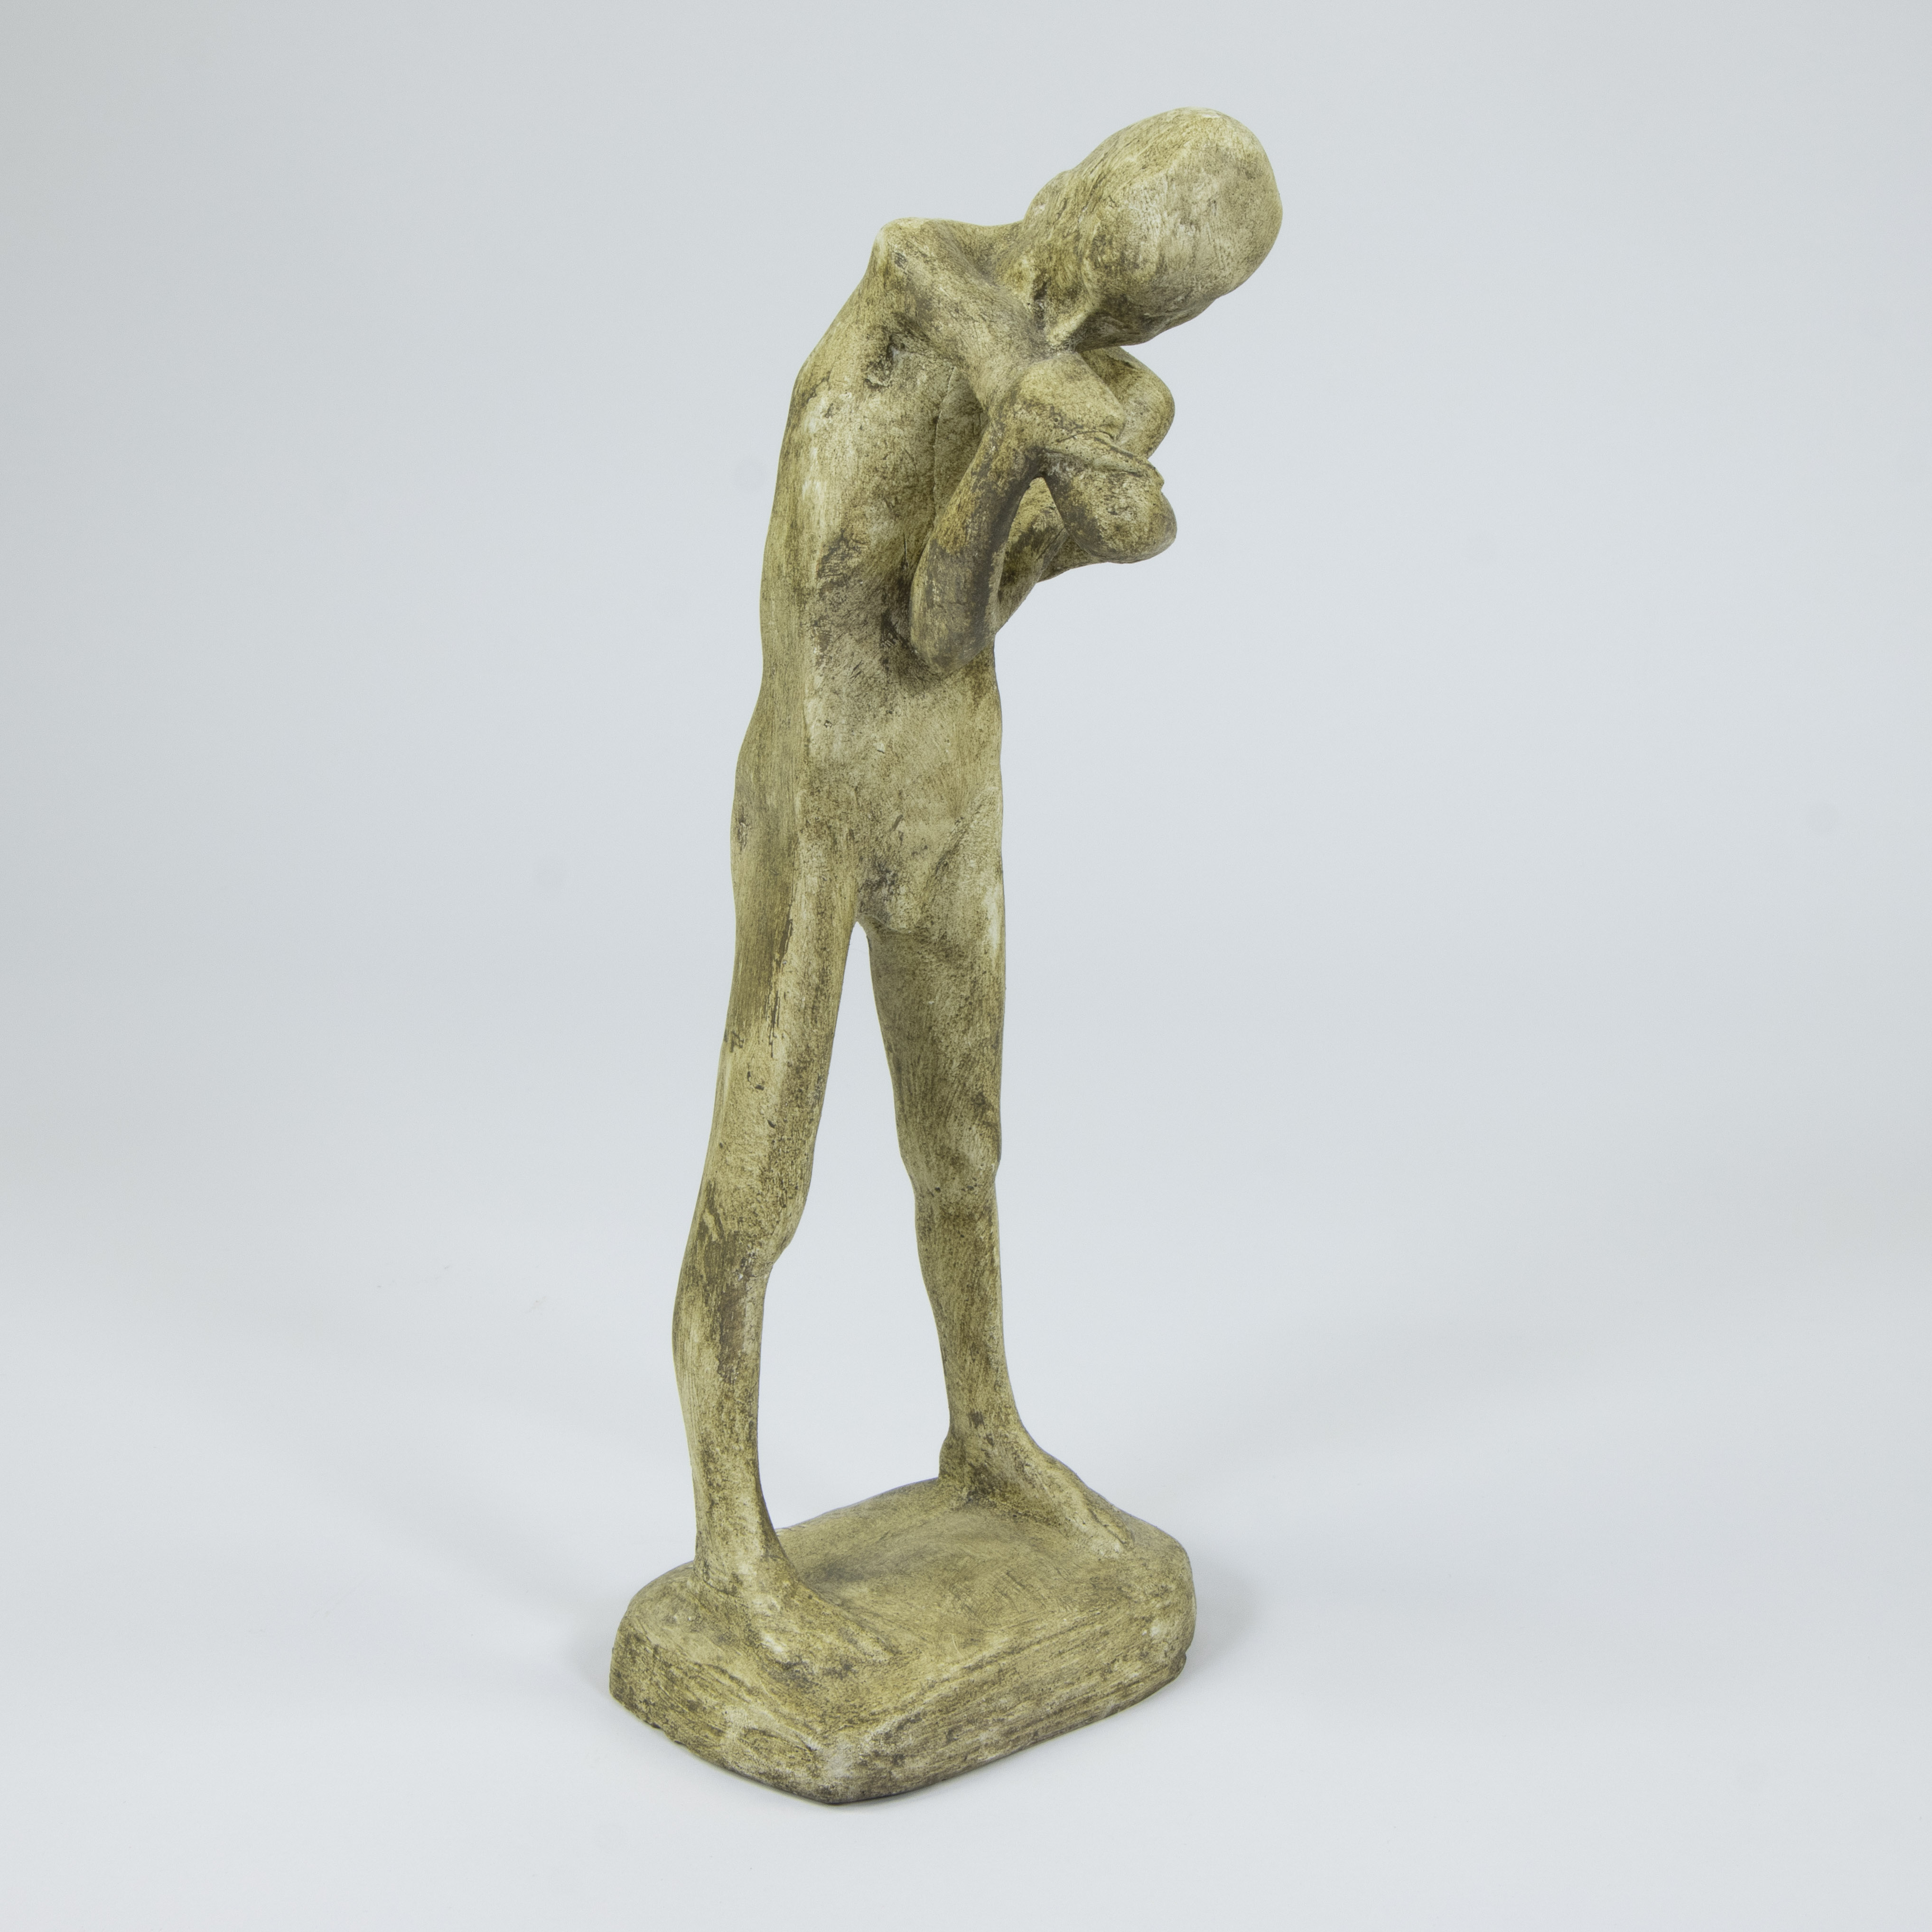 George MINNE (1866-1941), patinated plaster sculpture Le petit blessé, signed, posthumous edition